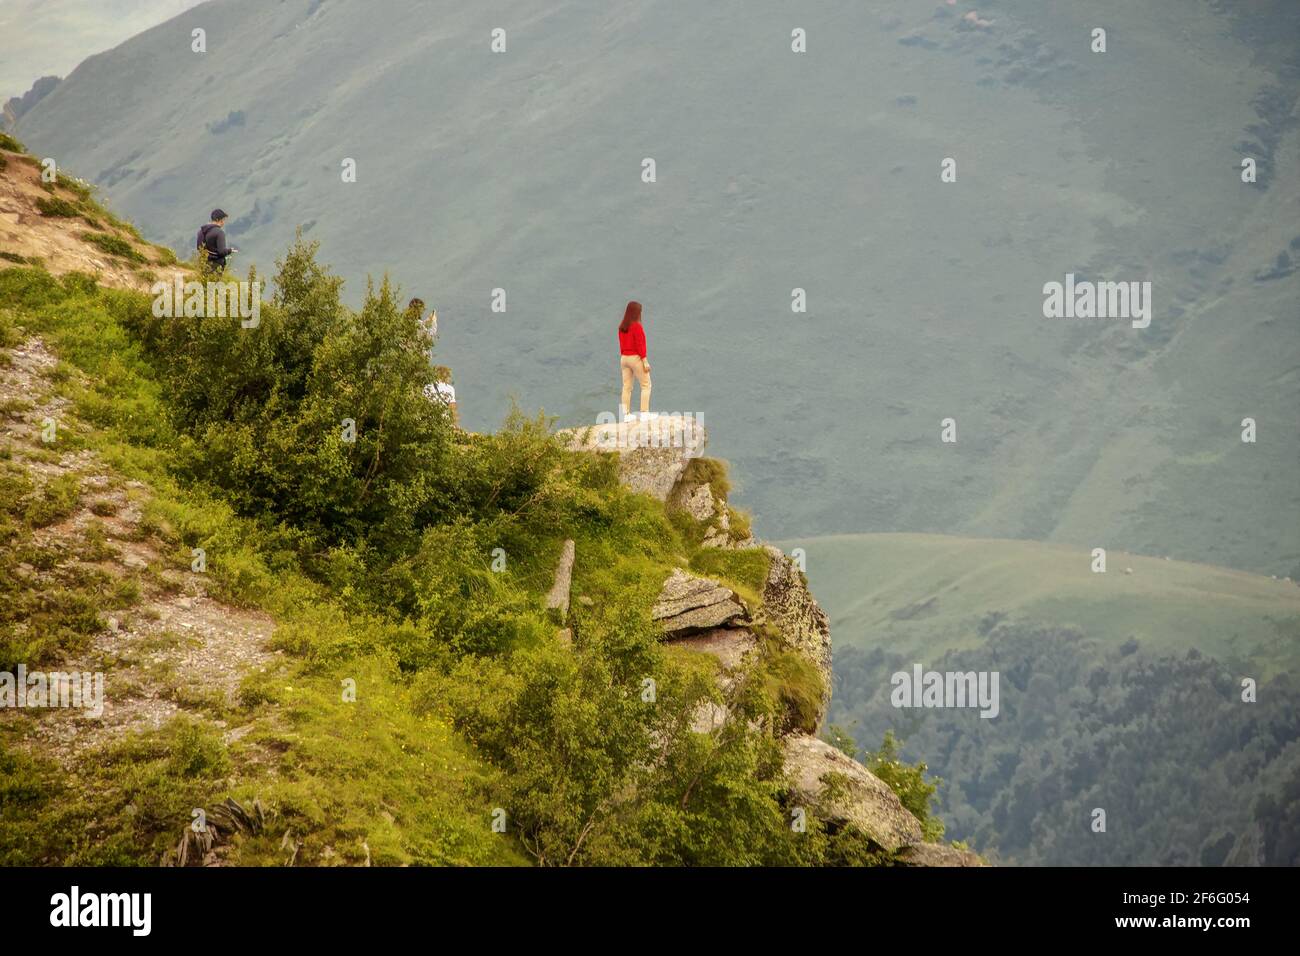 Fille debout sur l'affleurement regardant au-dessus de Devil's Valley dans le Montagnes du Caucase de la République de Géorgie avec des amis derrière prise de photos avec ph Banque D'Images